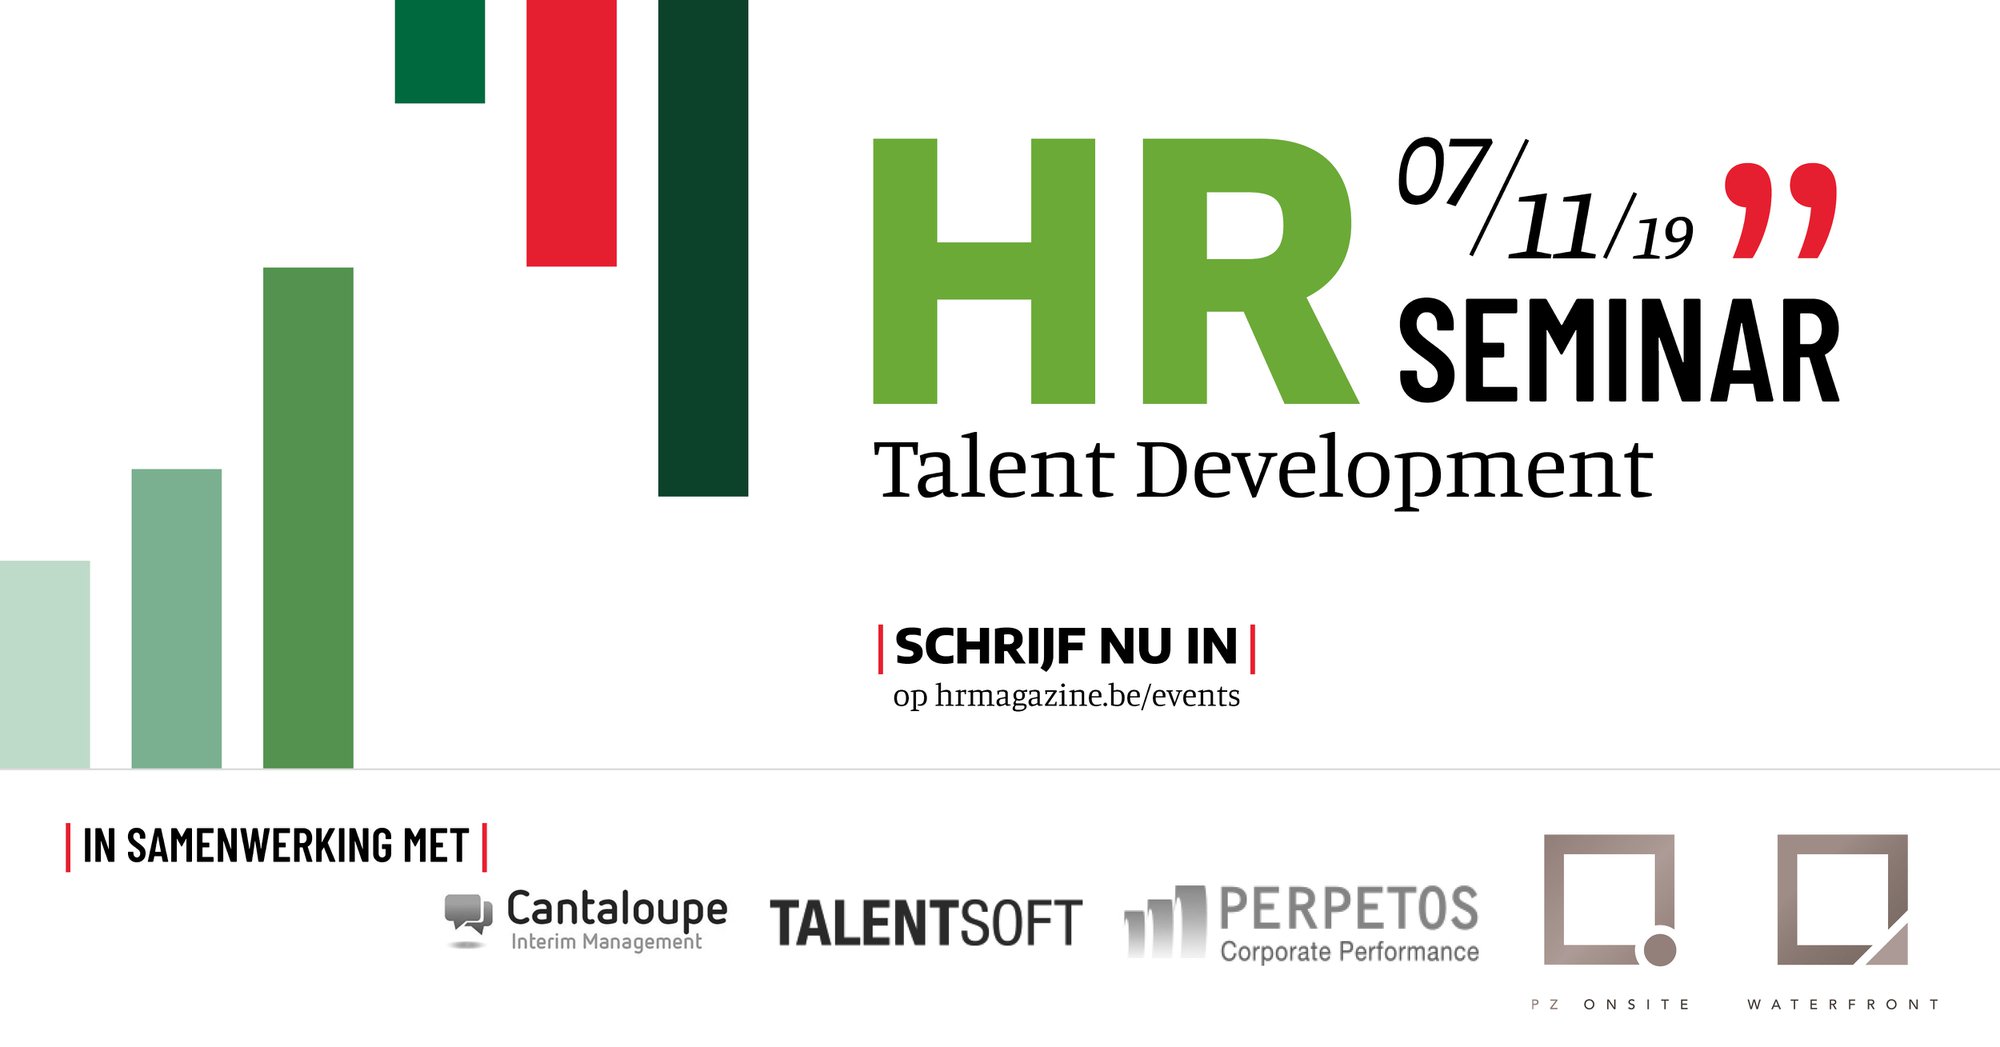 HRseminar Talent Development | 7 november 2019